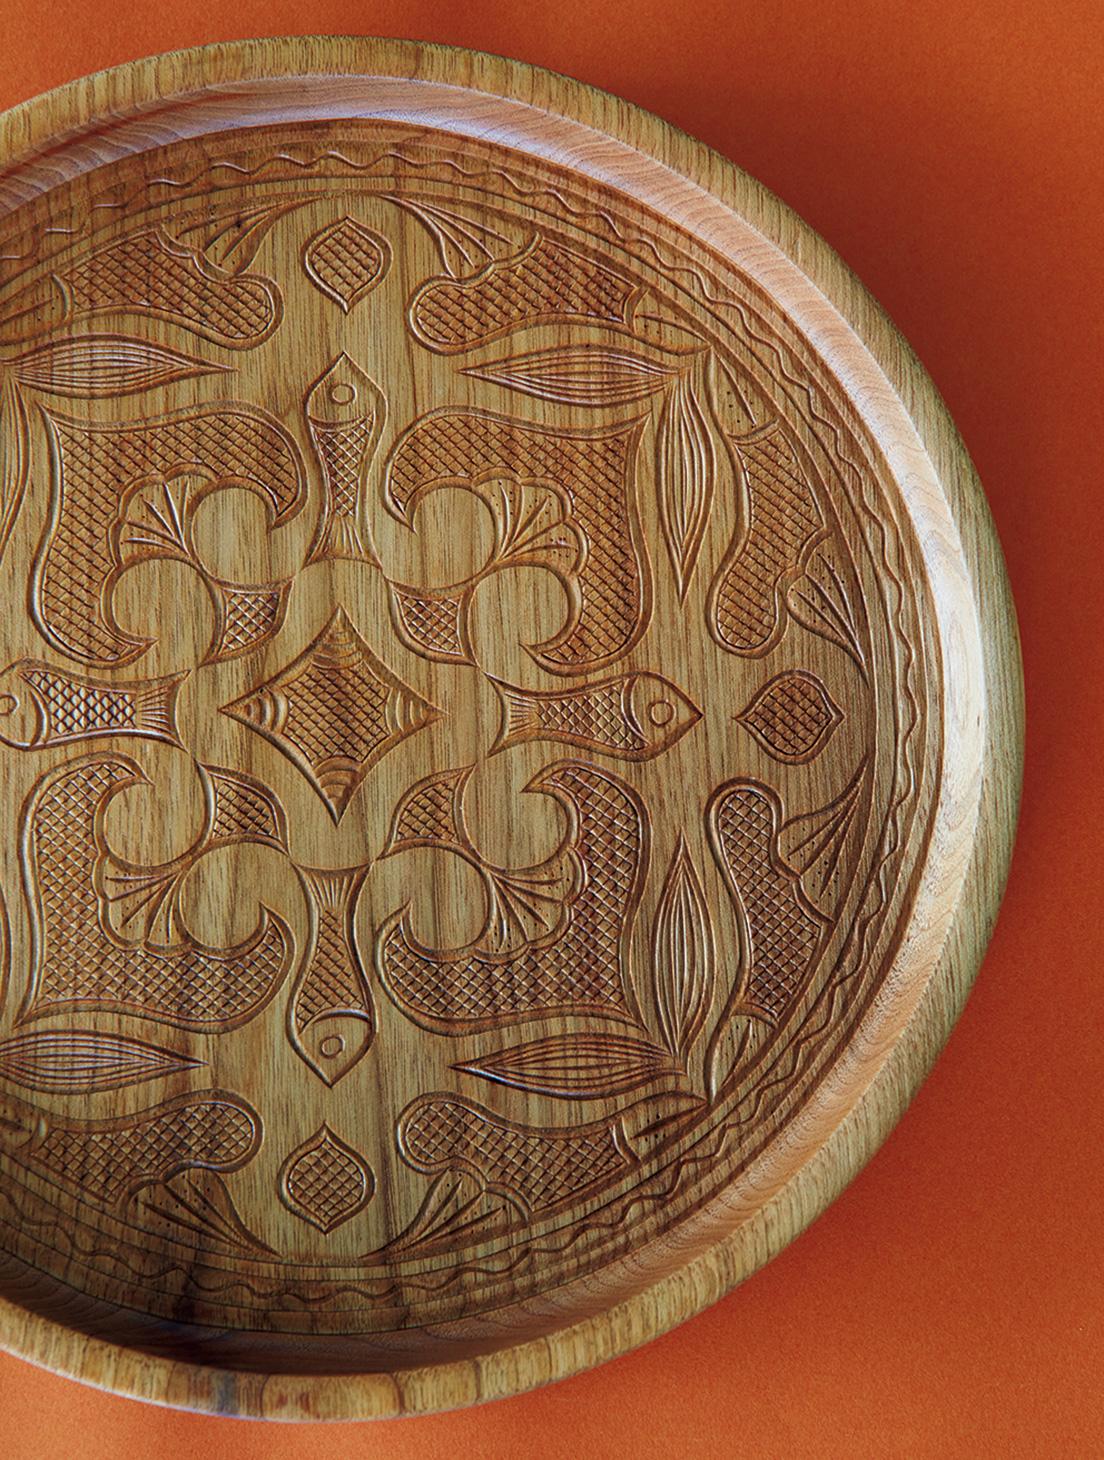 Purchase No. 45【アイヌ伝統工芸 二風谷イタ】カムイへの祈りを紋様に。美しい木彫りの盆 “イタ”。